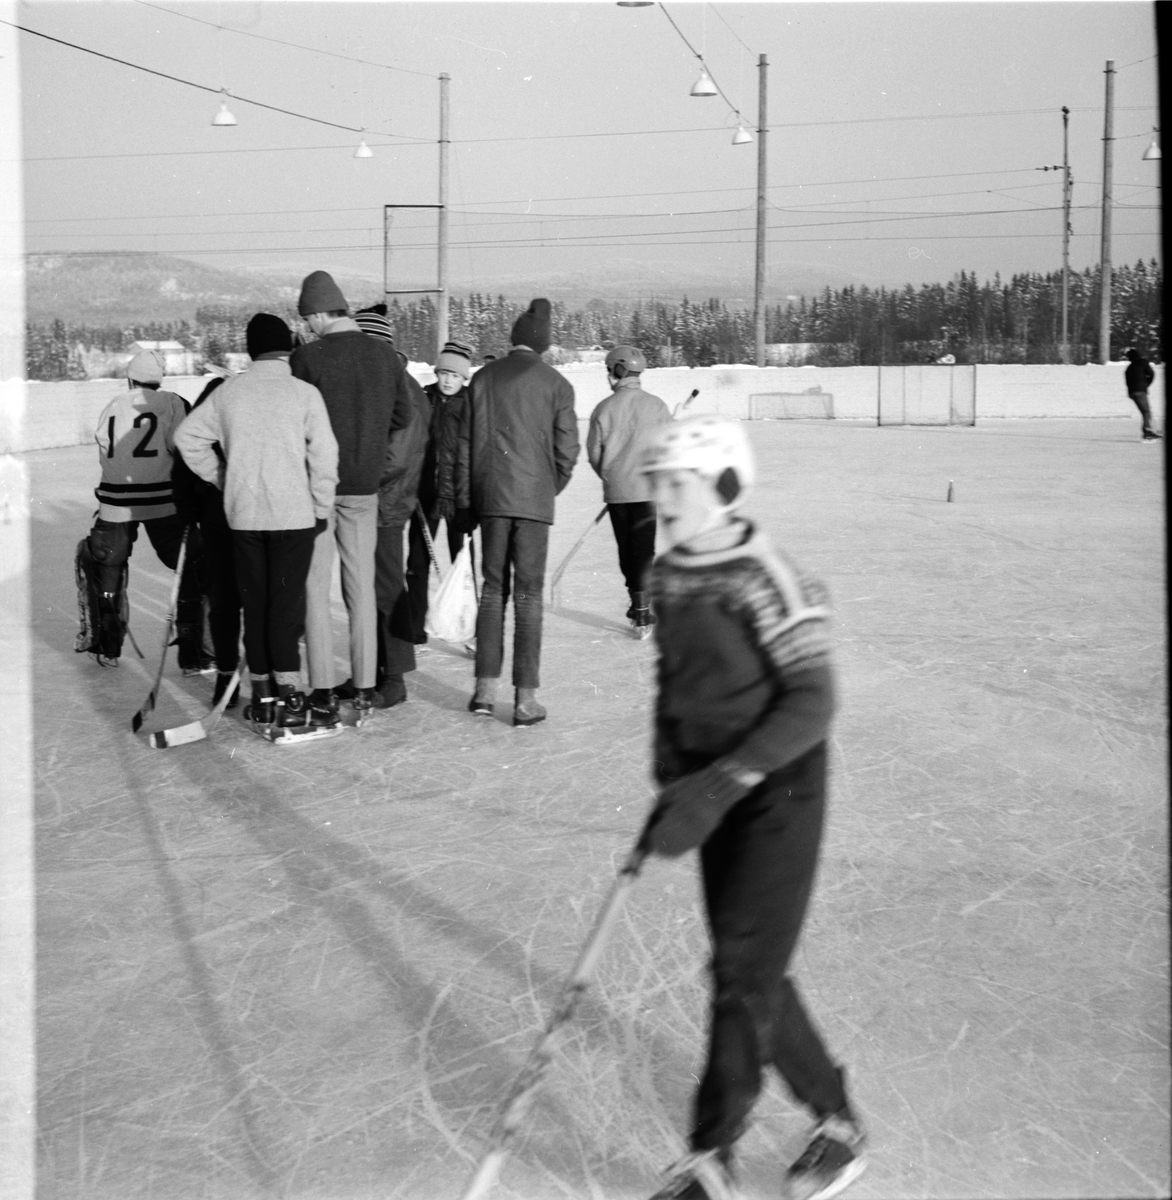 Arbrå,
Sportlovet,
Februari 1969